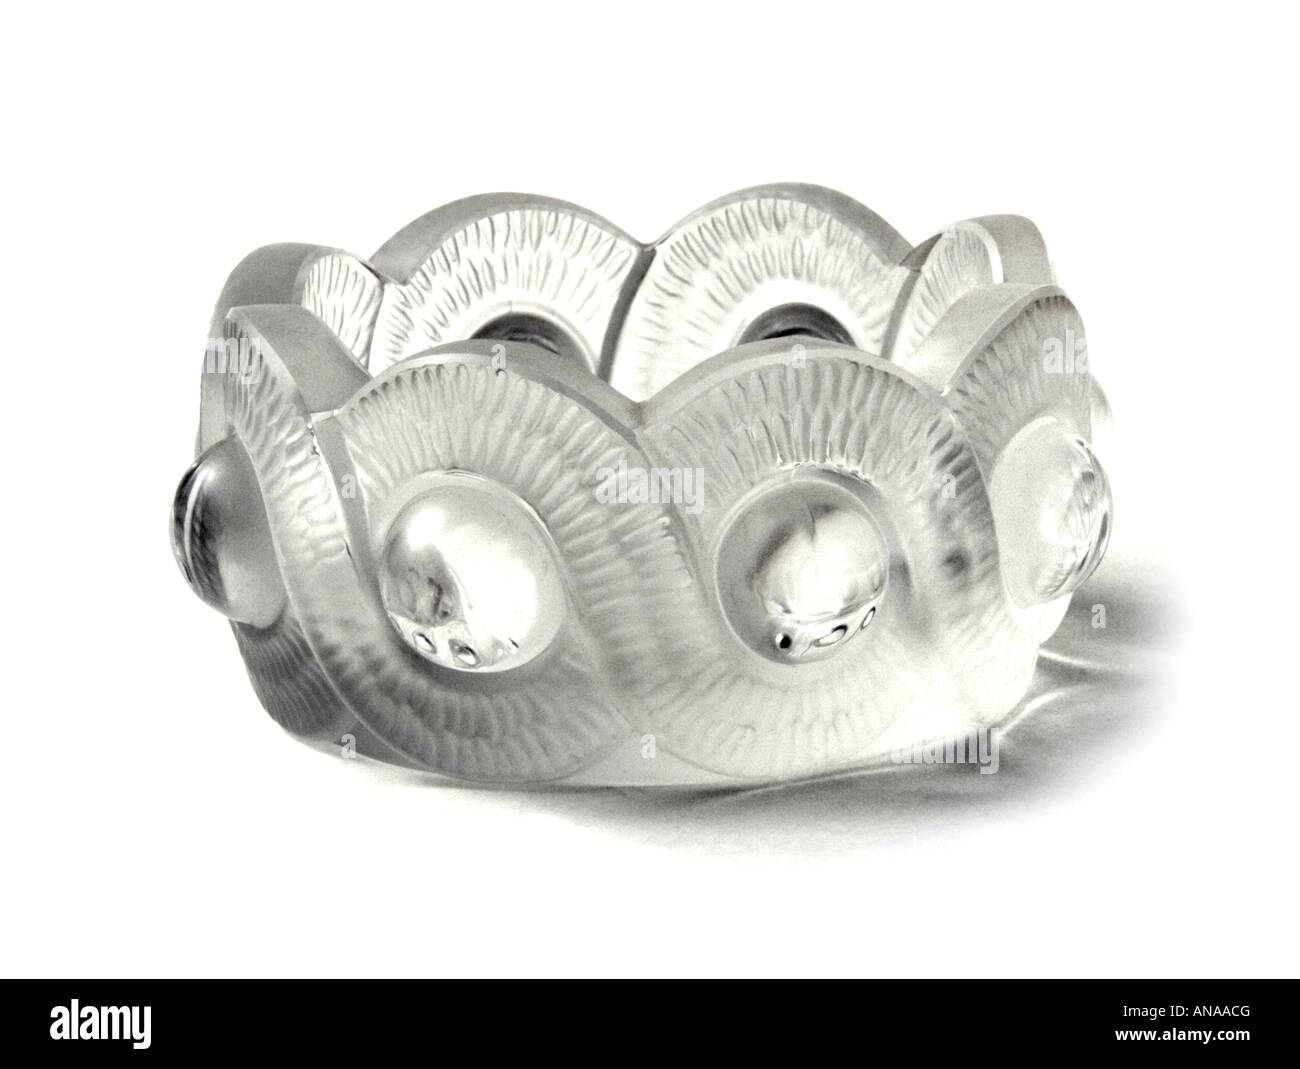 Lalique Kristall Glasschüssel nur zur redaktionellen Verwendung Stockfoto